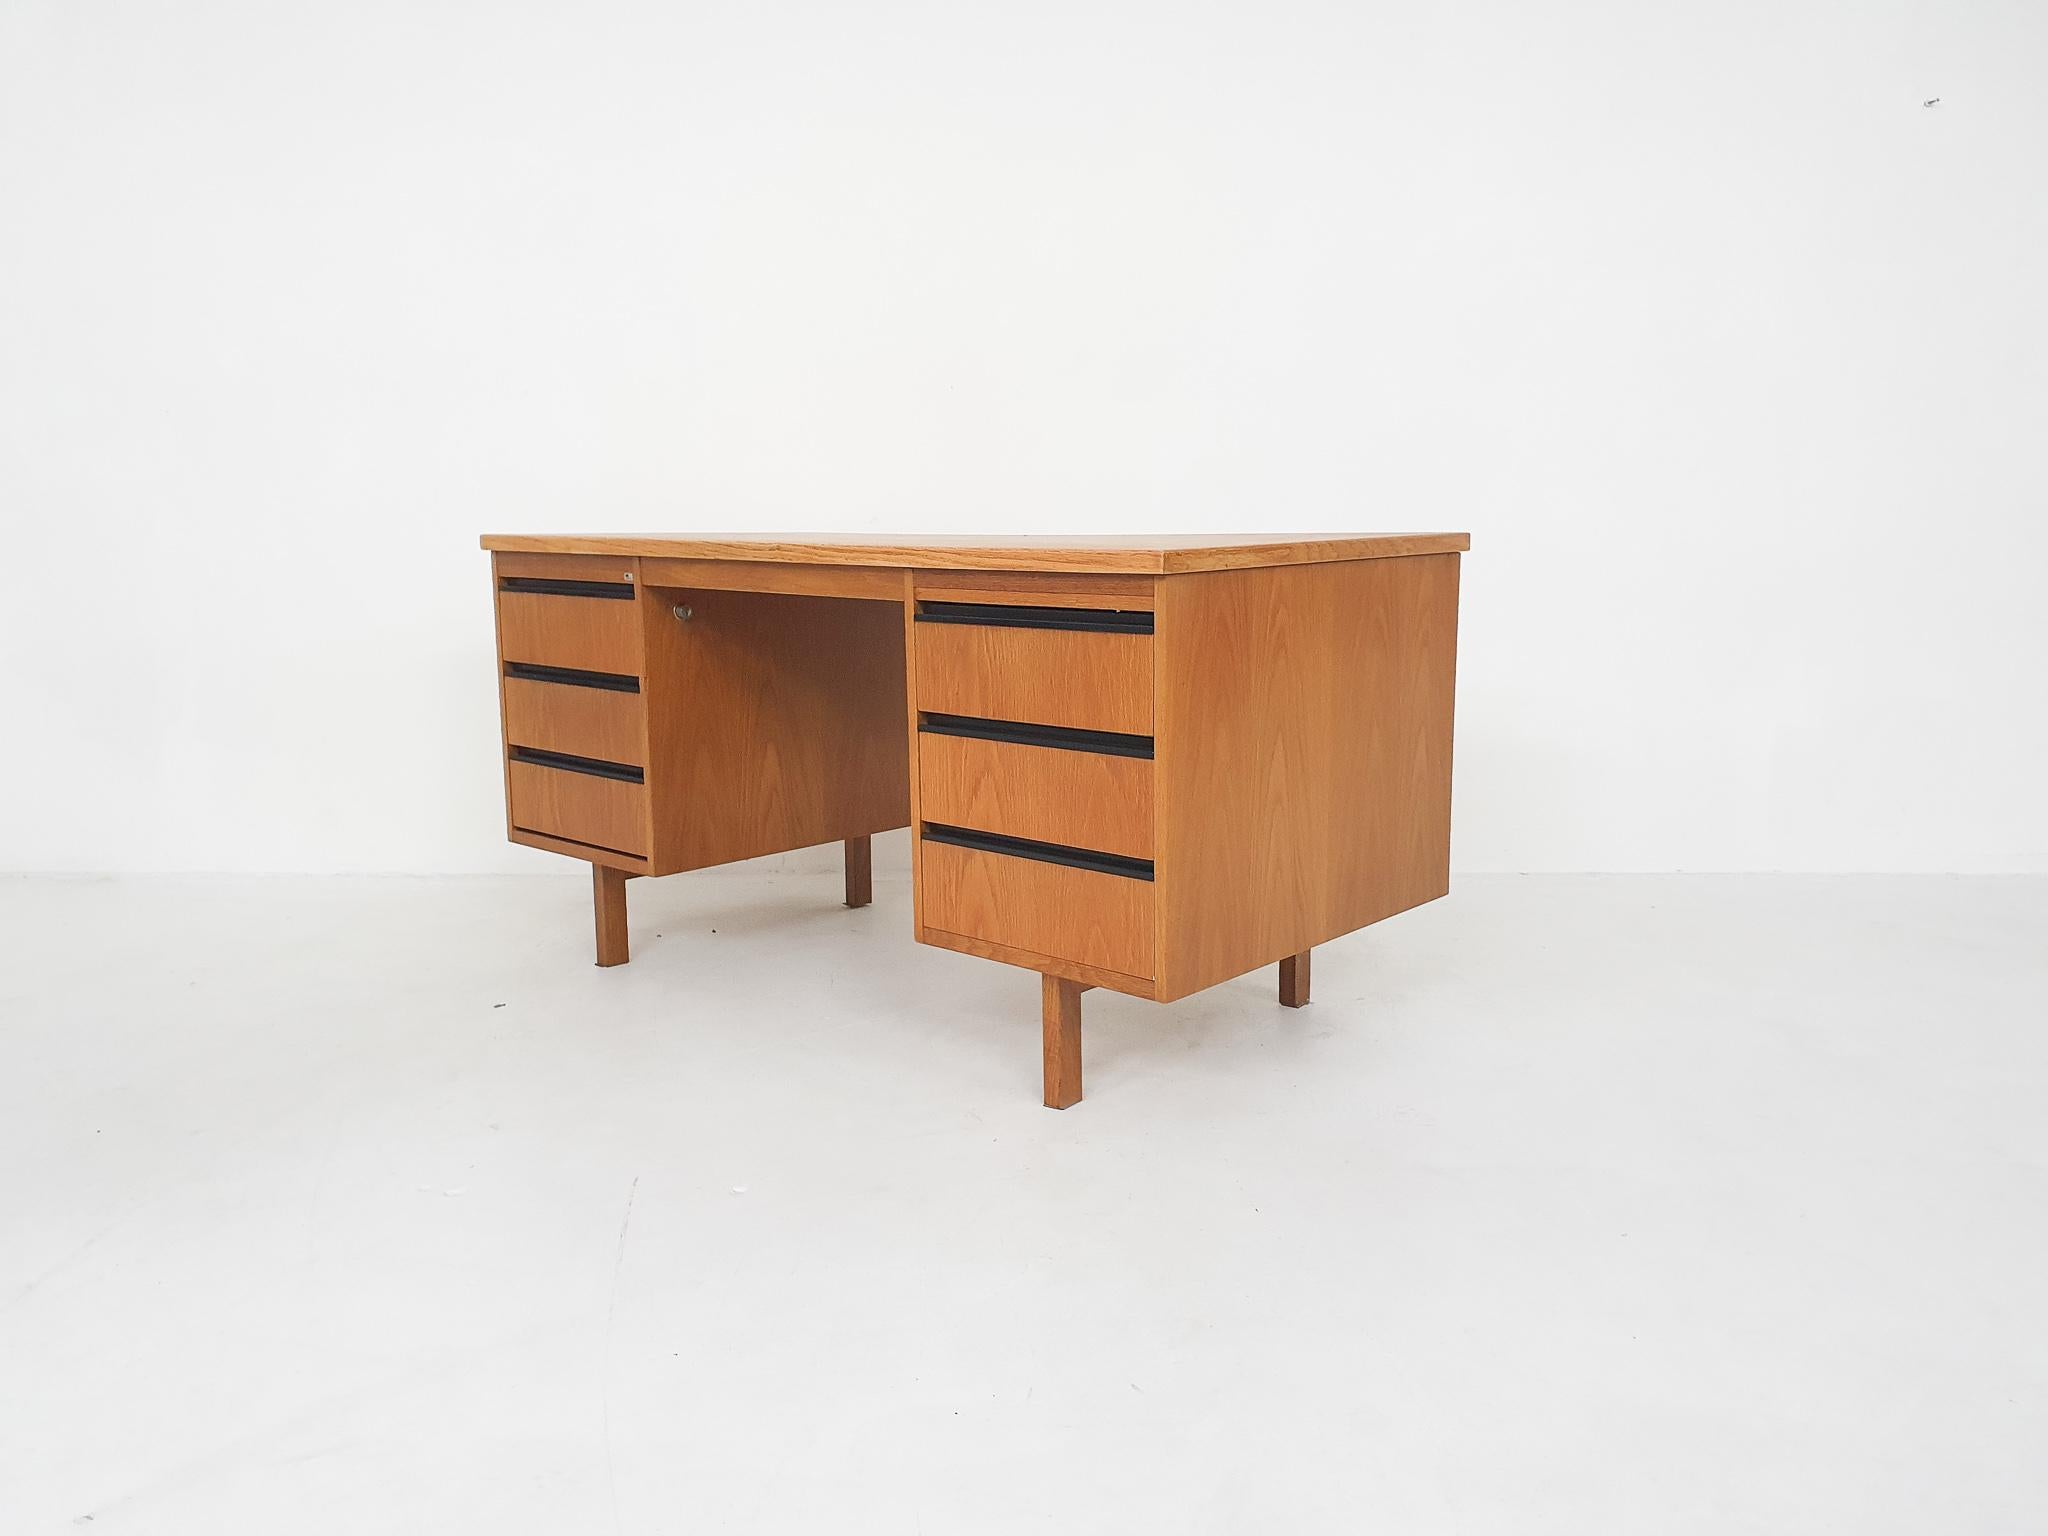 Plastic Dutch Design Oak Desk by Eeka, Attrb Coen de Vries, 1970's